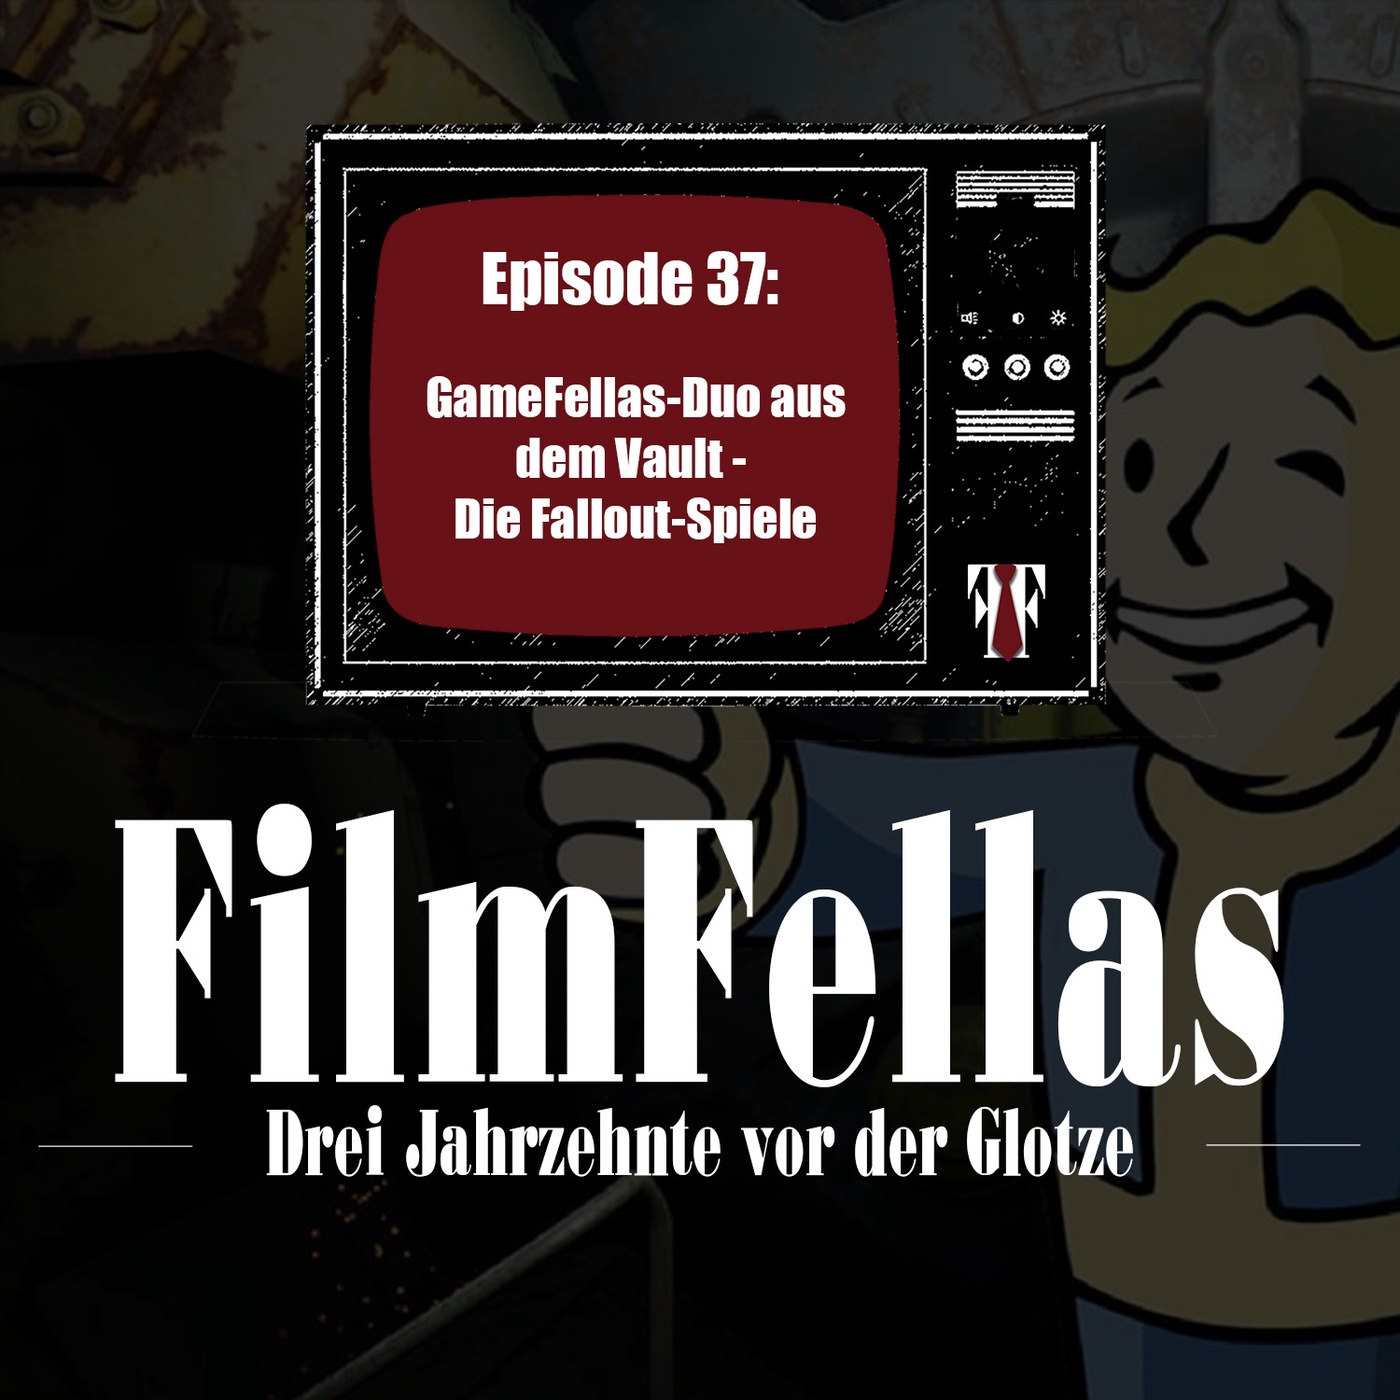 Episode 37: GameFellas-Duo aus dem Vault - Die Fallout-Spiele